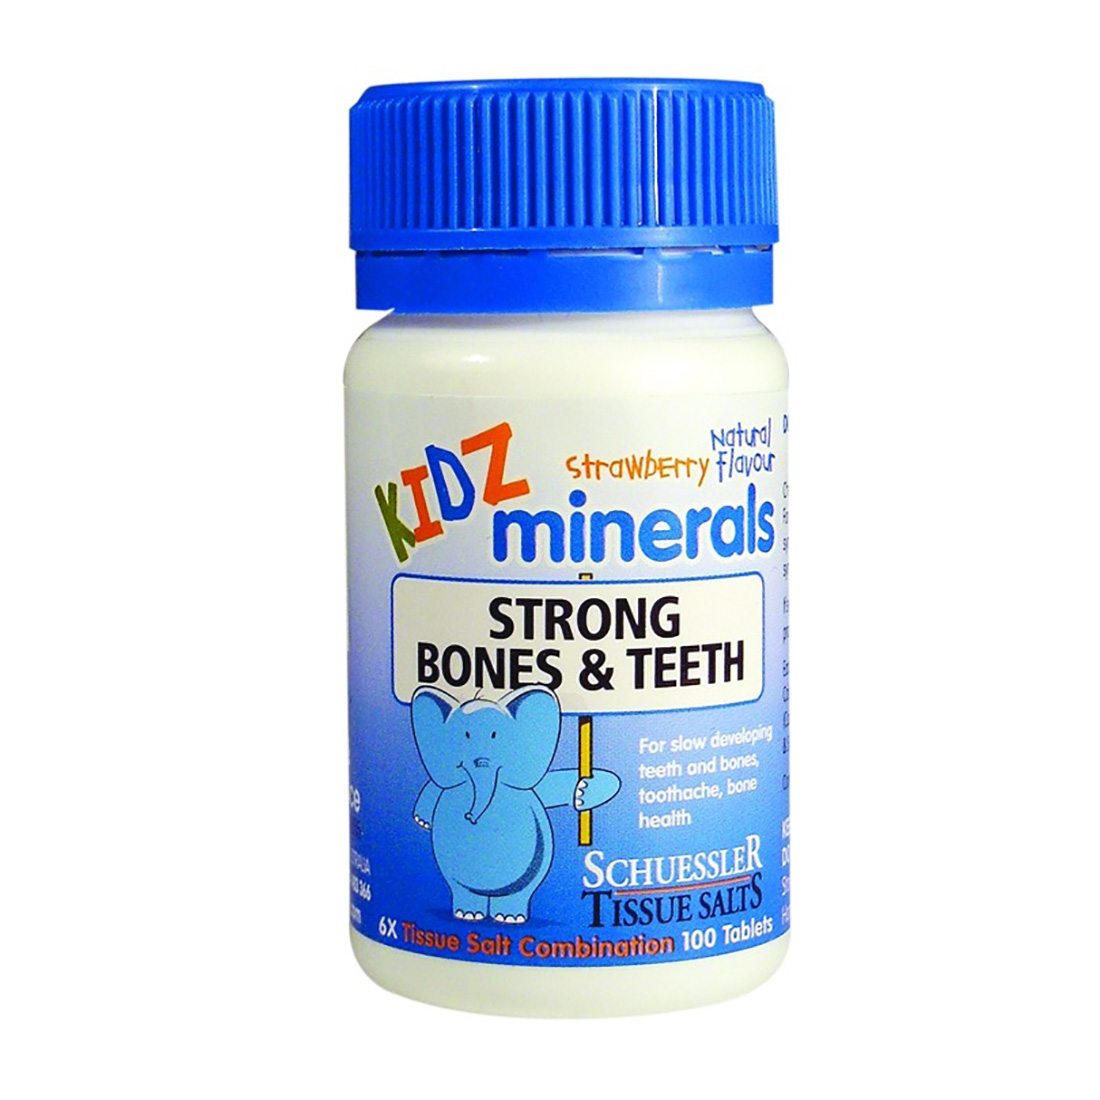 Strong-Bones-Teeth-KIDZ-Minerals